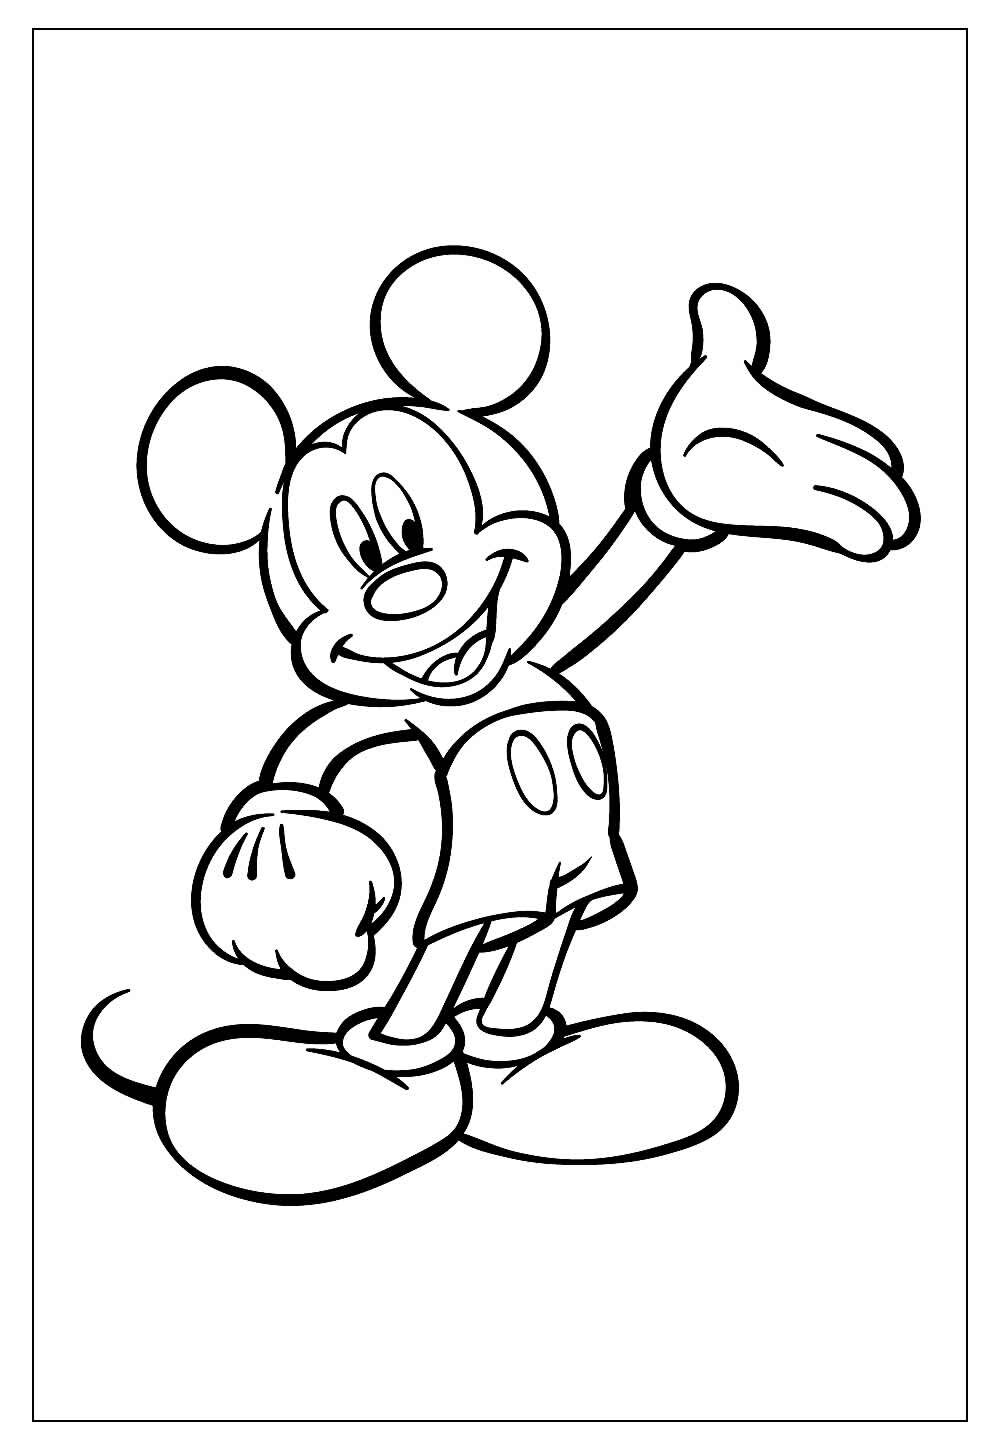 Desenho do Mickey Mouse para colorir